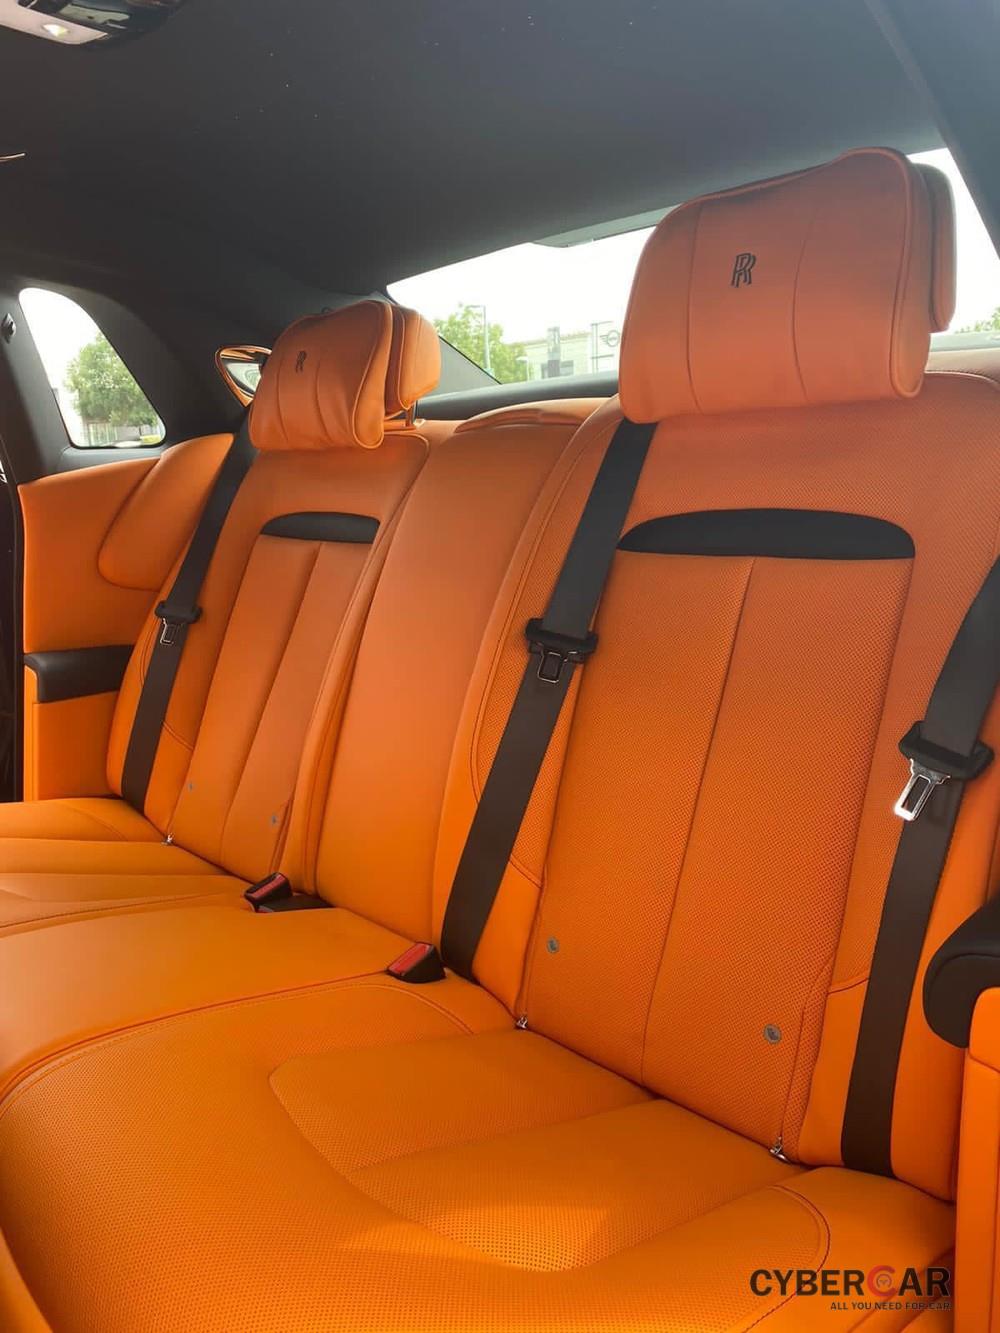 Còn đây là khoang hành khách của xe với điểm nhấn là ghế ngồi bọc da màu cam Hermes